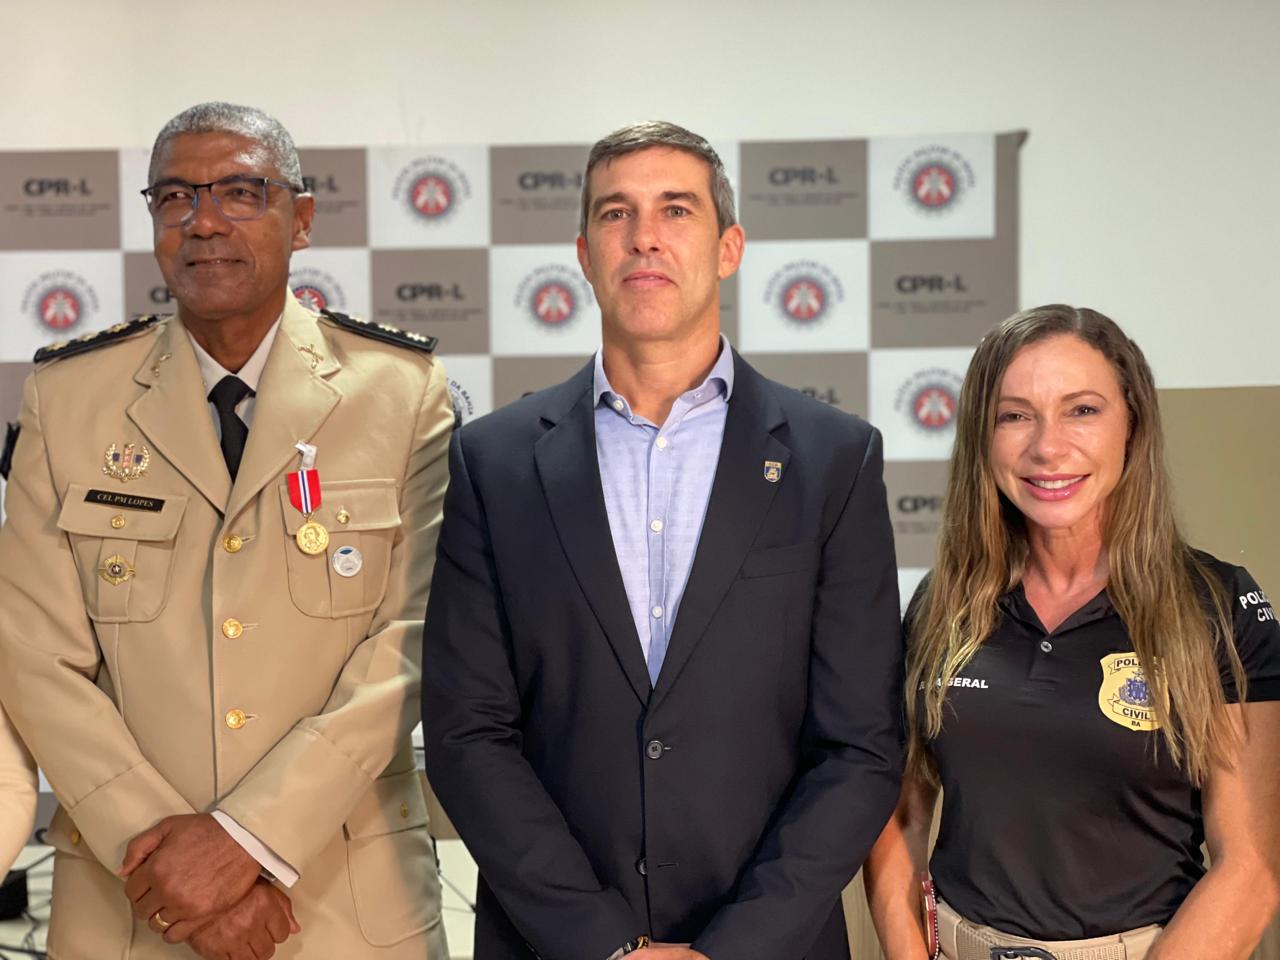 CPR-L: Comandante regional é agraciado com a Medalha Tiradentes, uma das mais importantes condecorações militares do Estado da Bahia